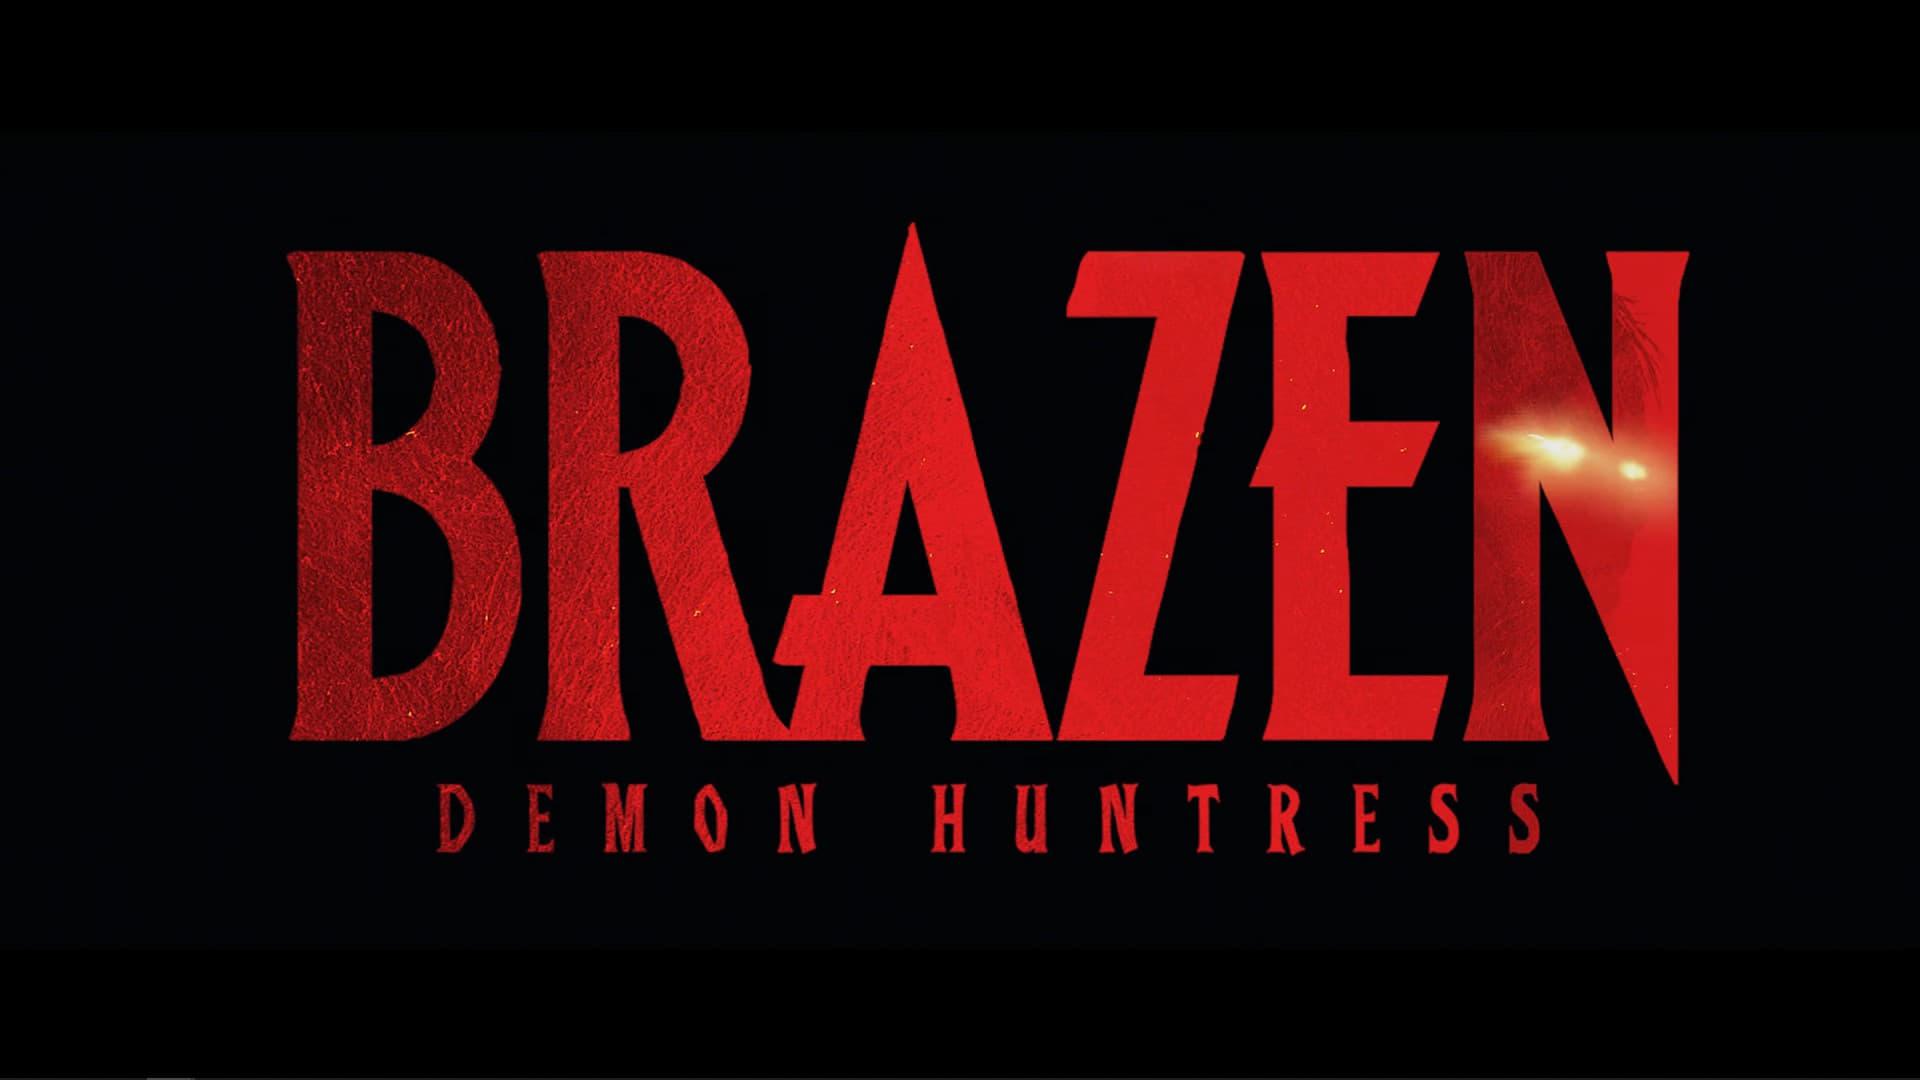 Demon Huntress Brazen backdrop